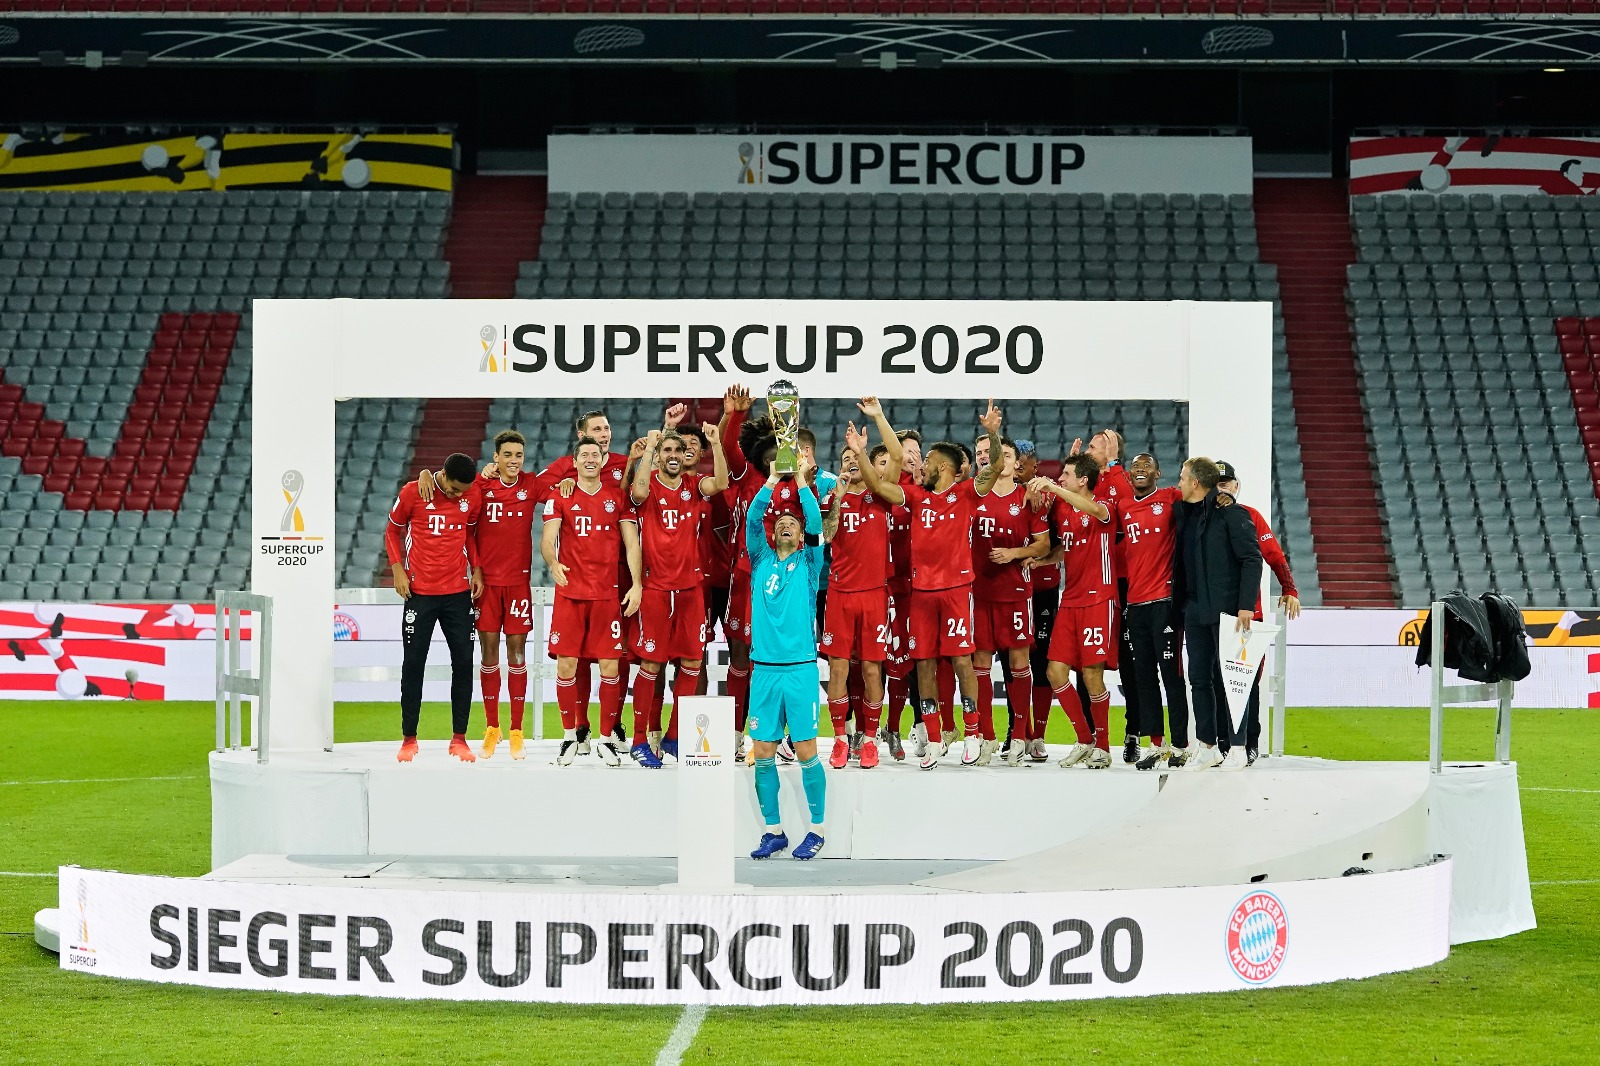 كأس السوبر: بايرن ميونيخ بطلا بفوزه على بوروسيا دورتموند 3-2